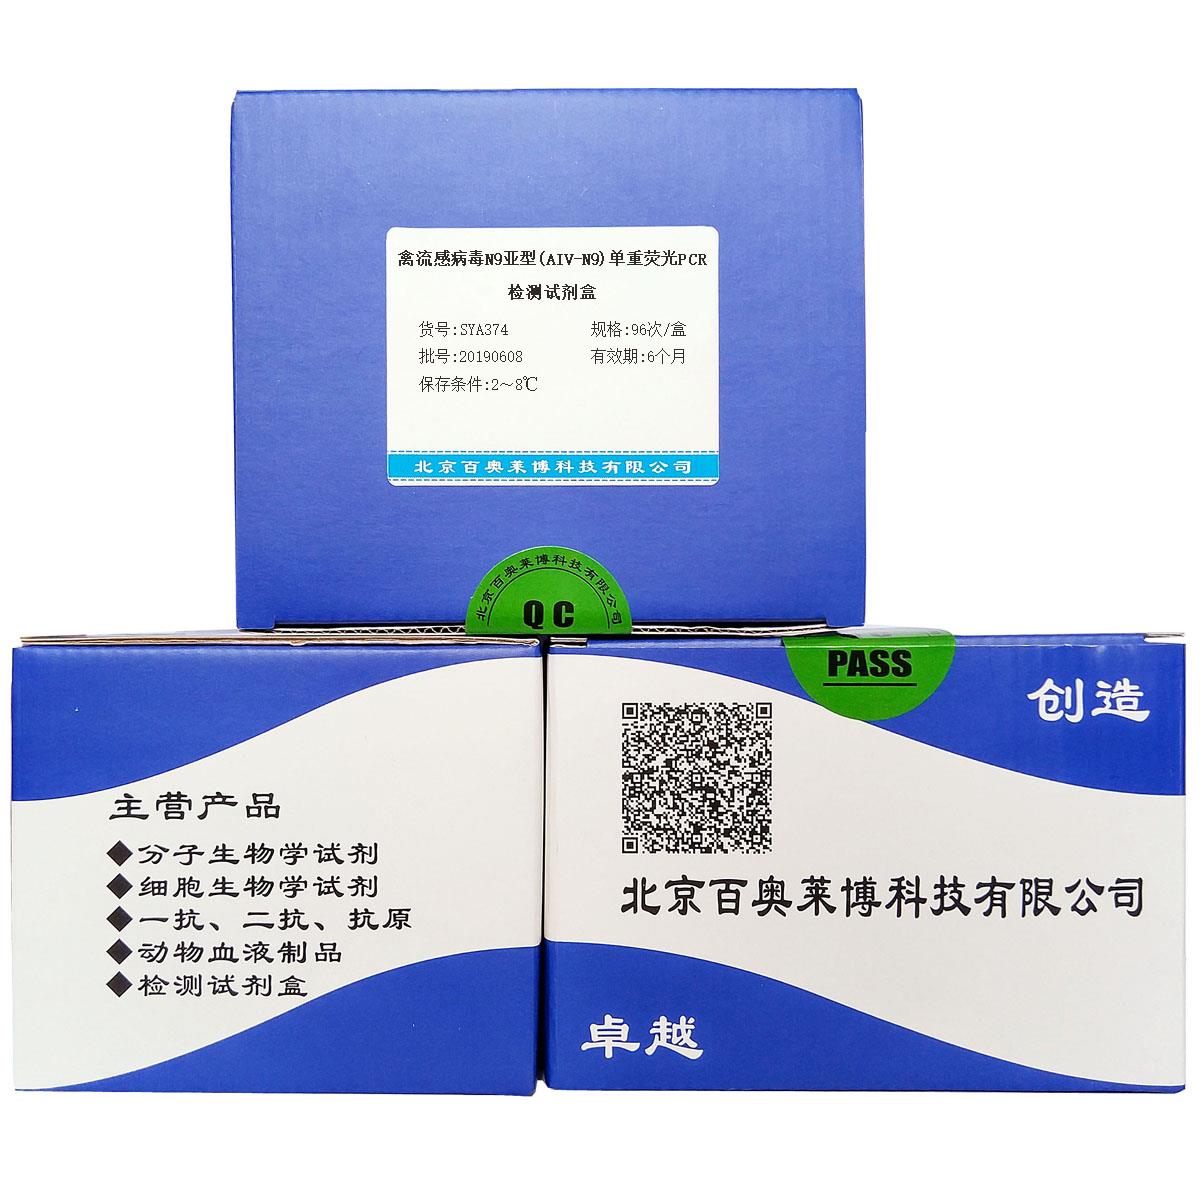 禽流感病毒N9亚型(AIV-N9)单重荧光PCR检测试剂盒